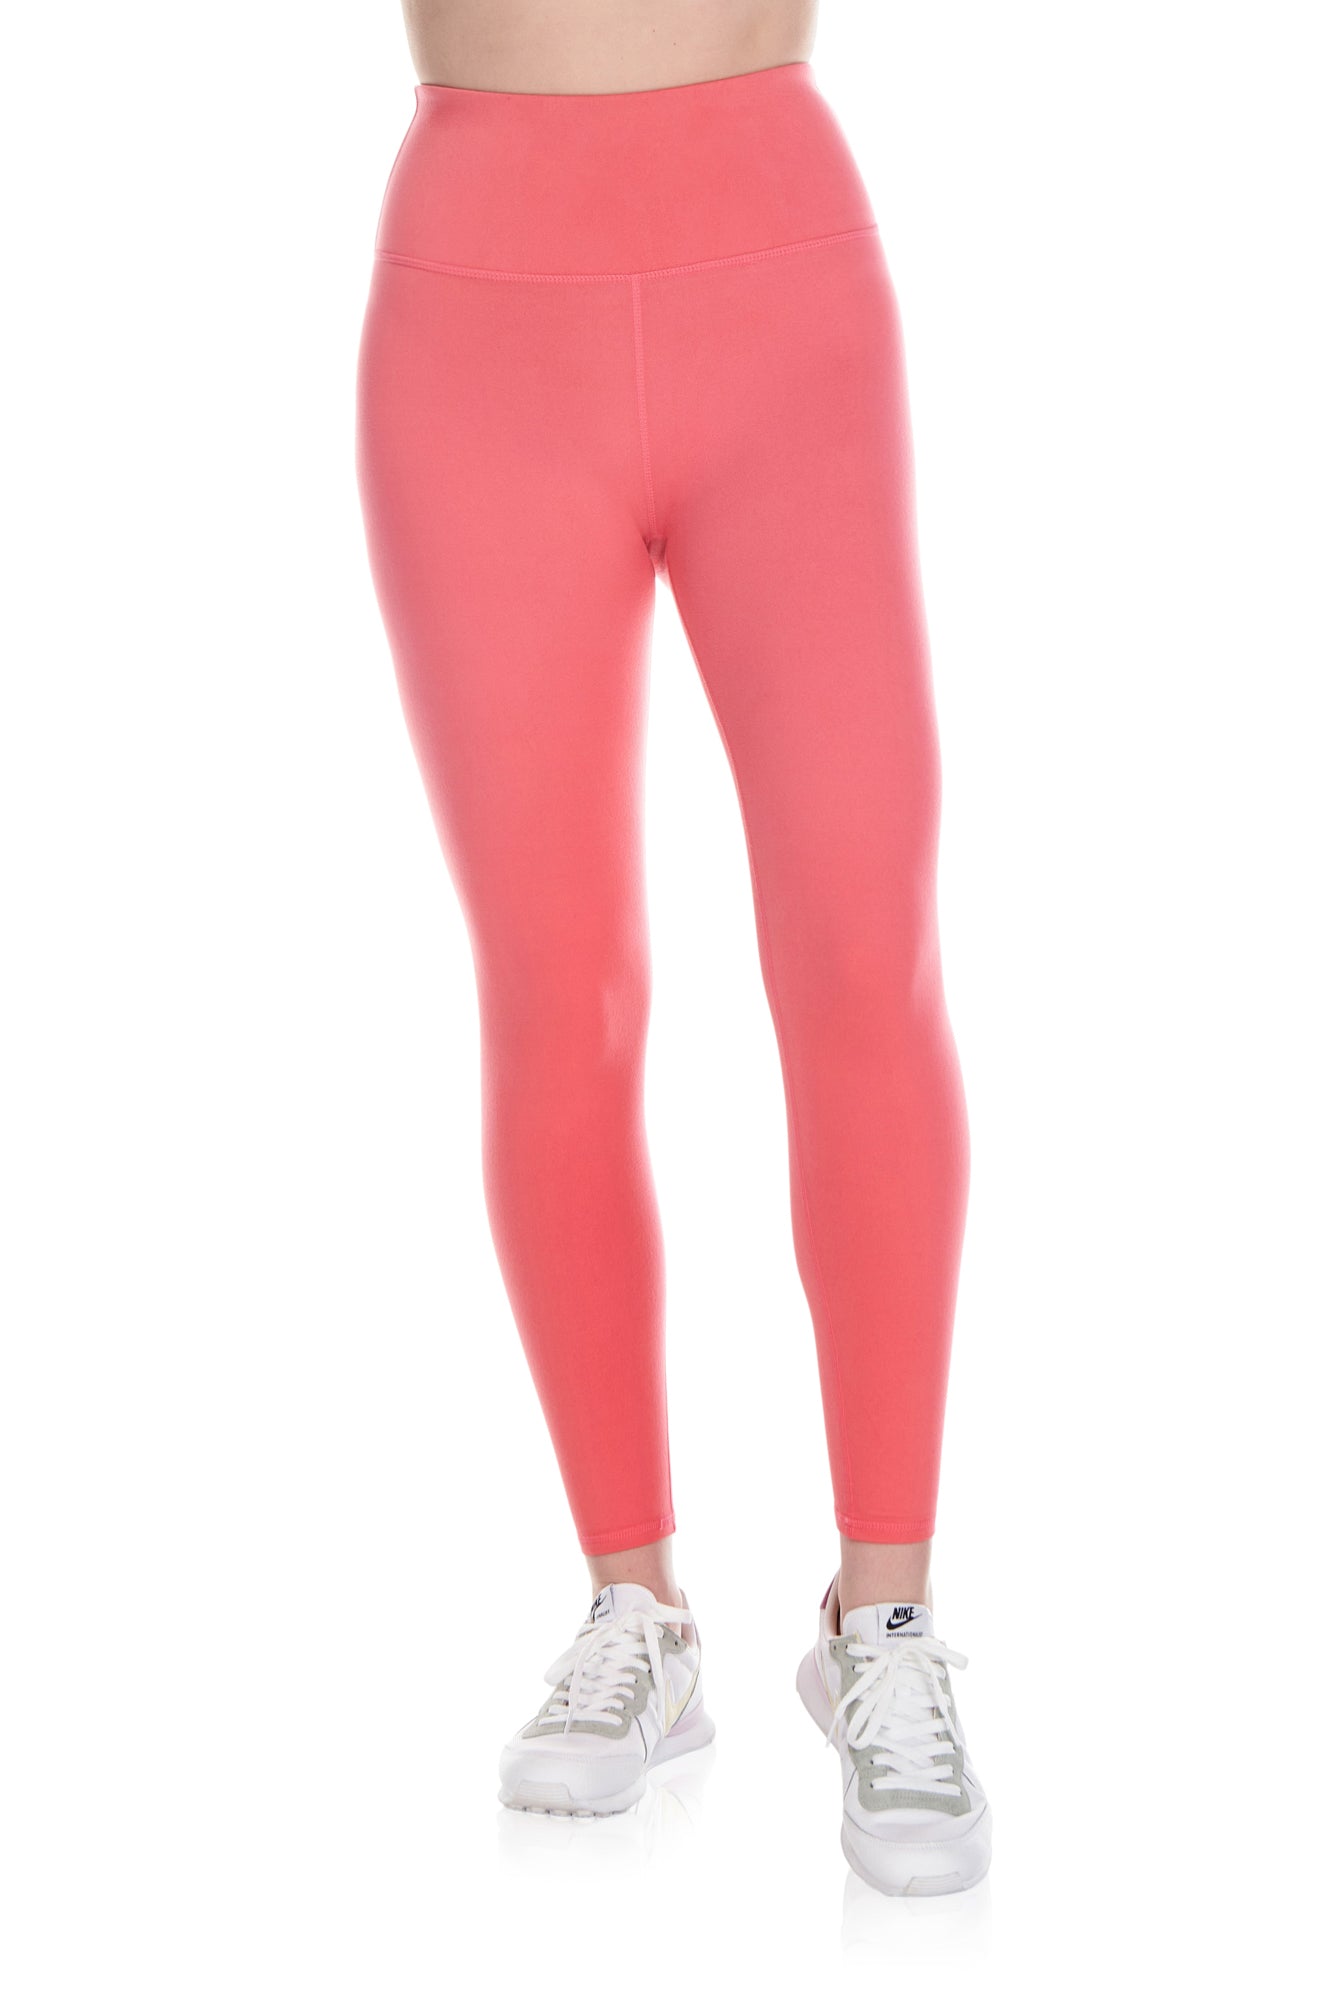 Kyodan - Pink Activewear Leggings Polyester Spandex